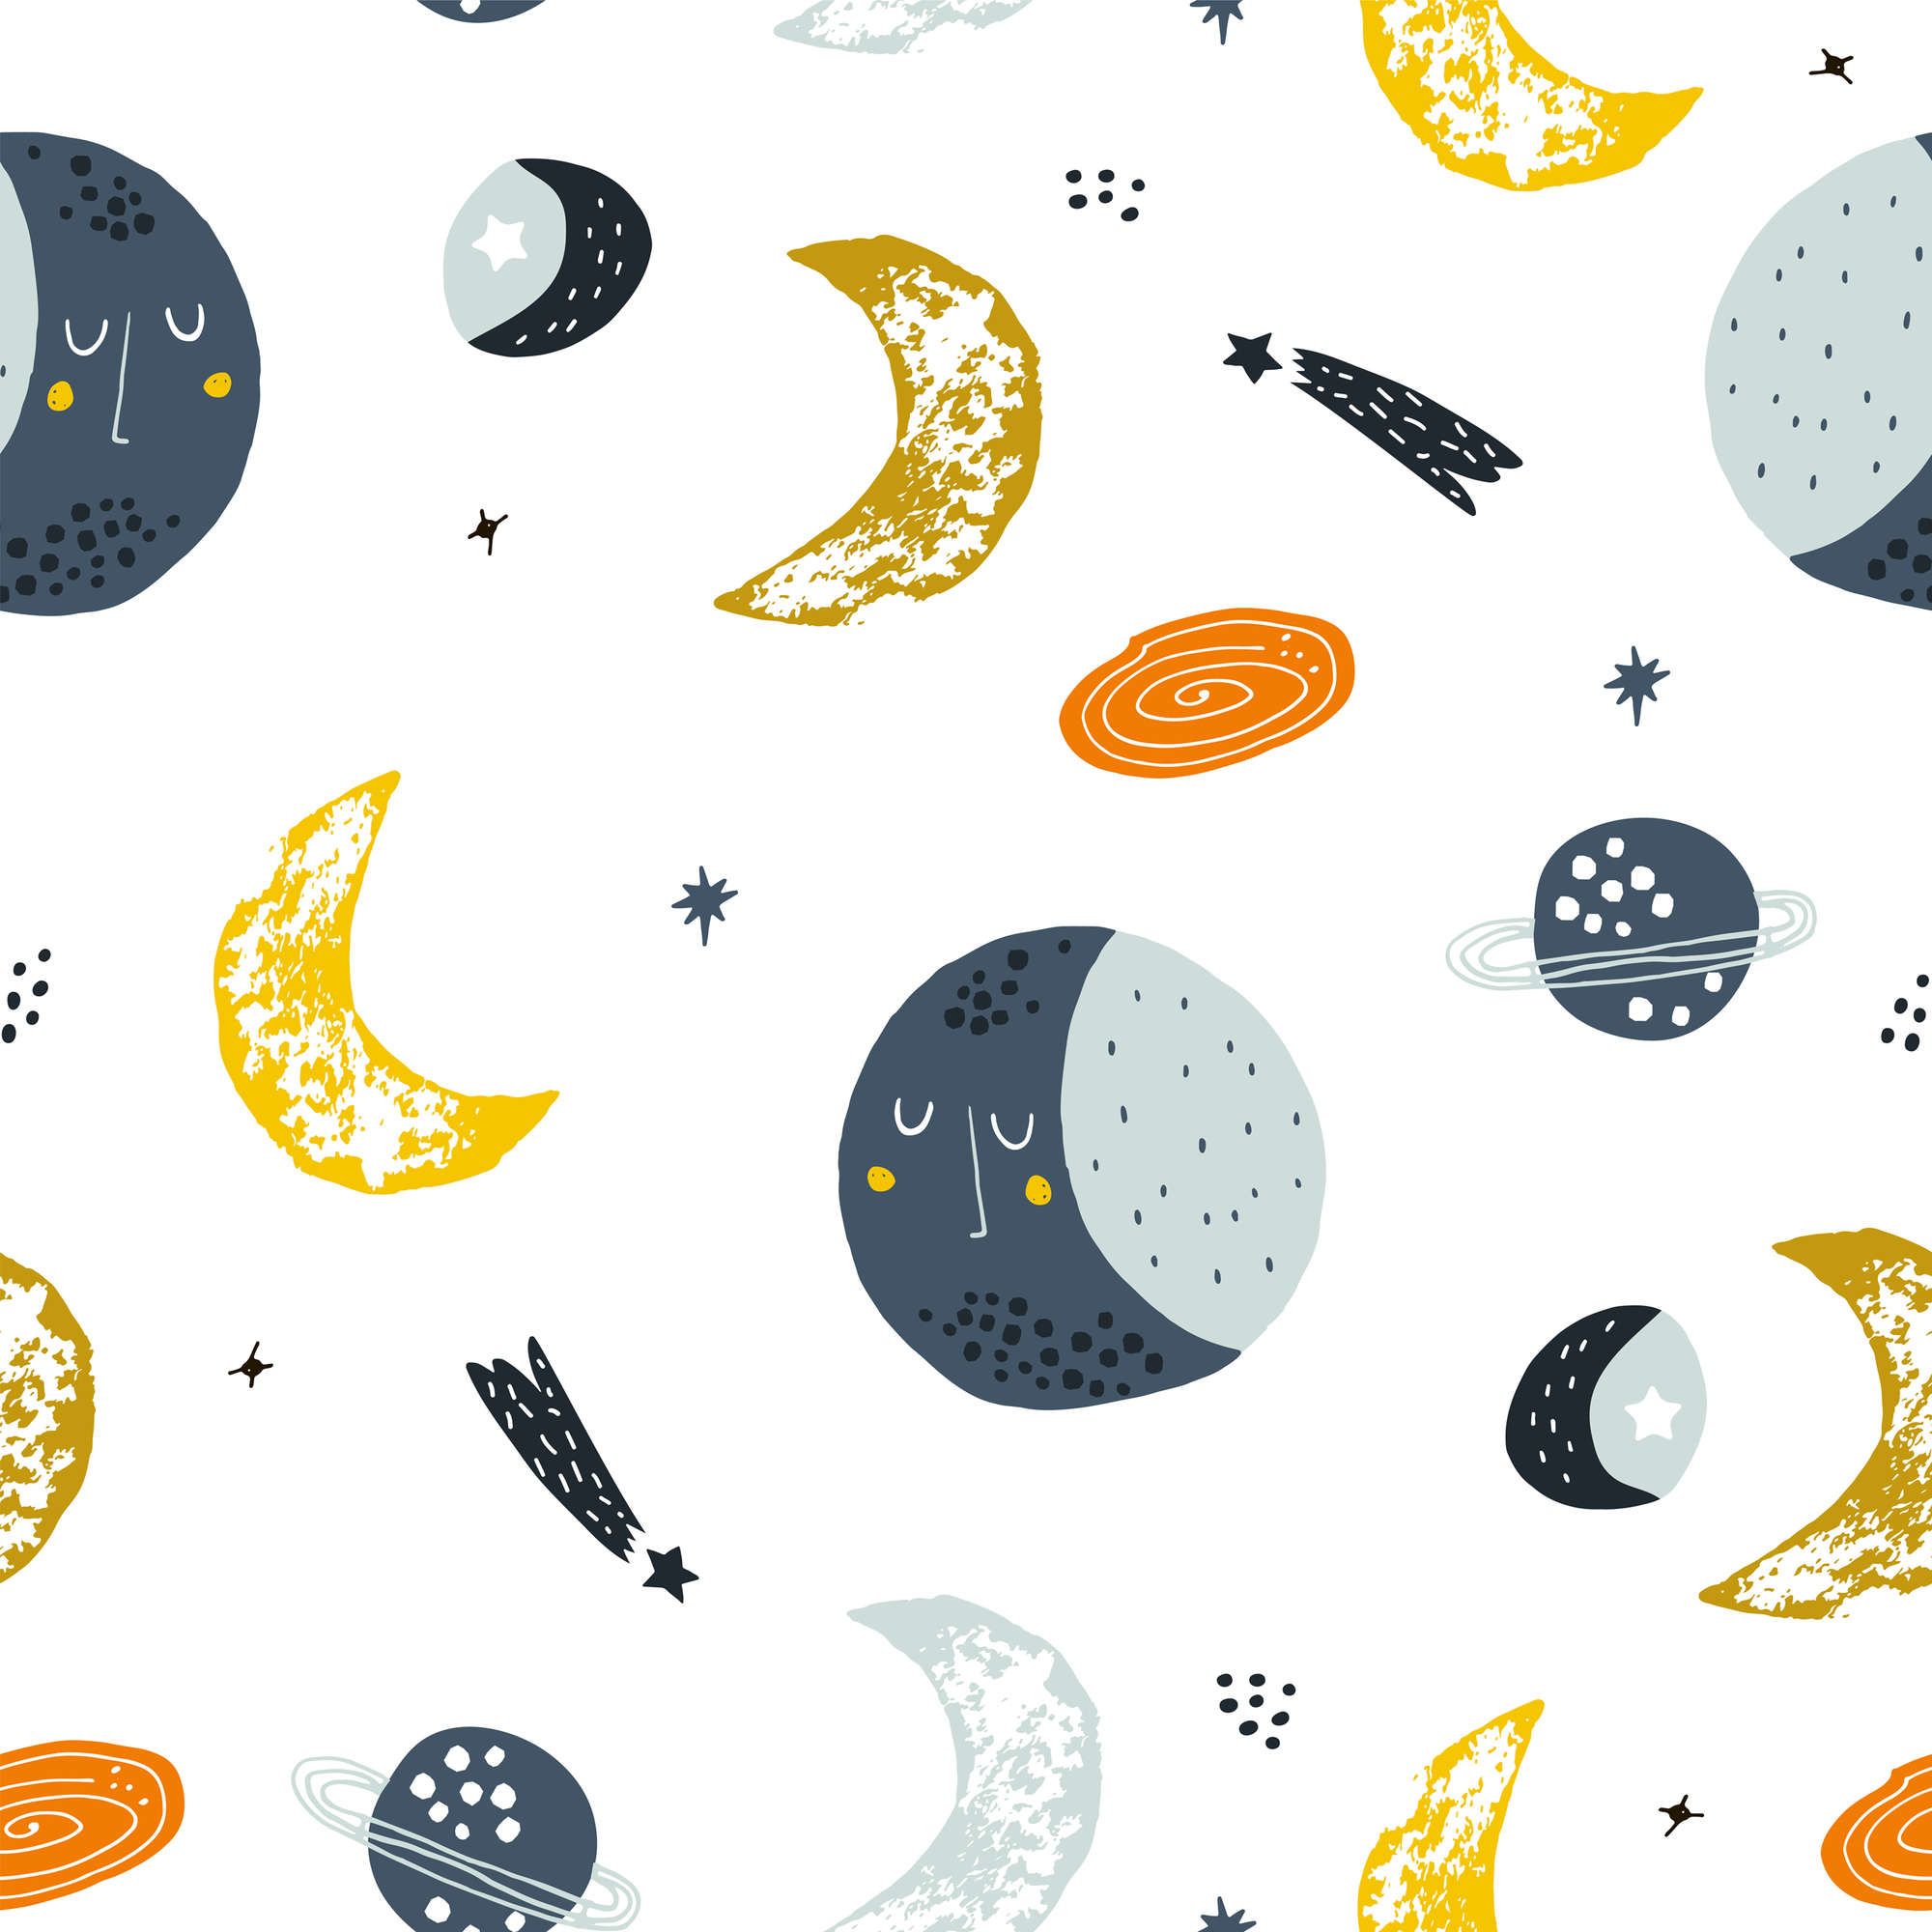             papiers peints à impression numérique avec lunes et étoiles filantes - intissé lisse & légèrement brillant
        